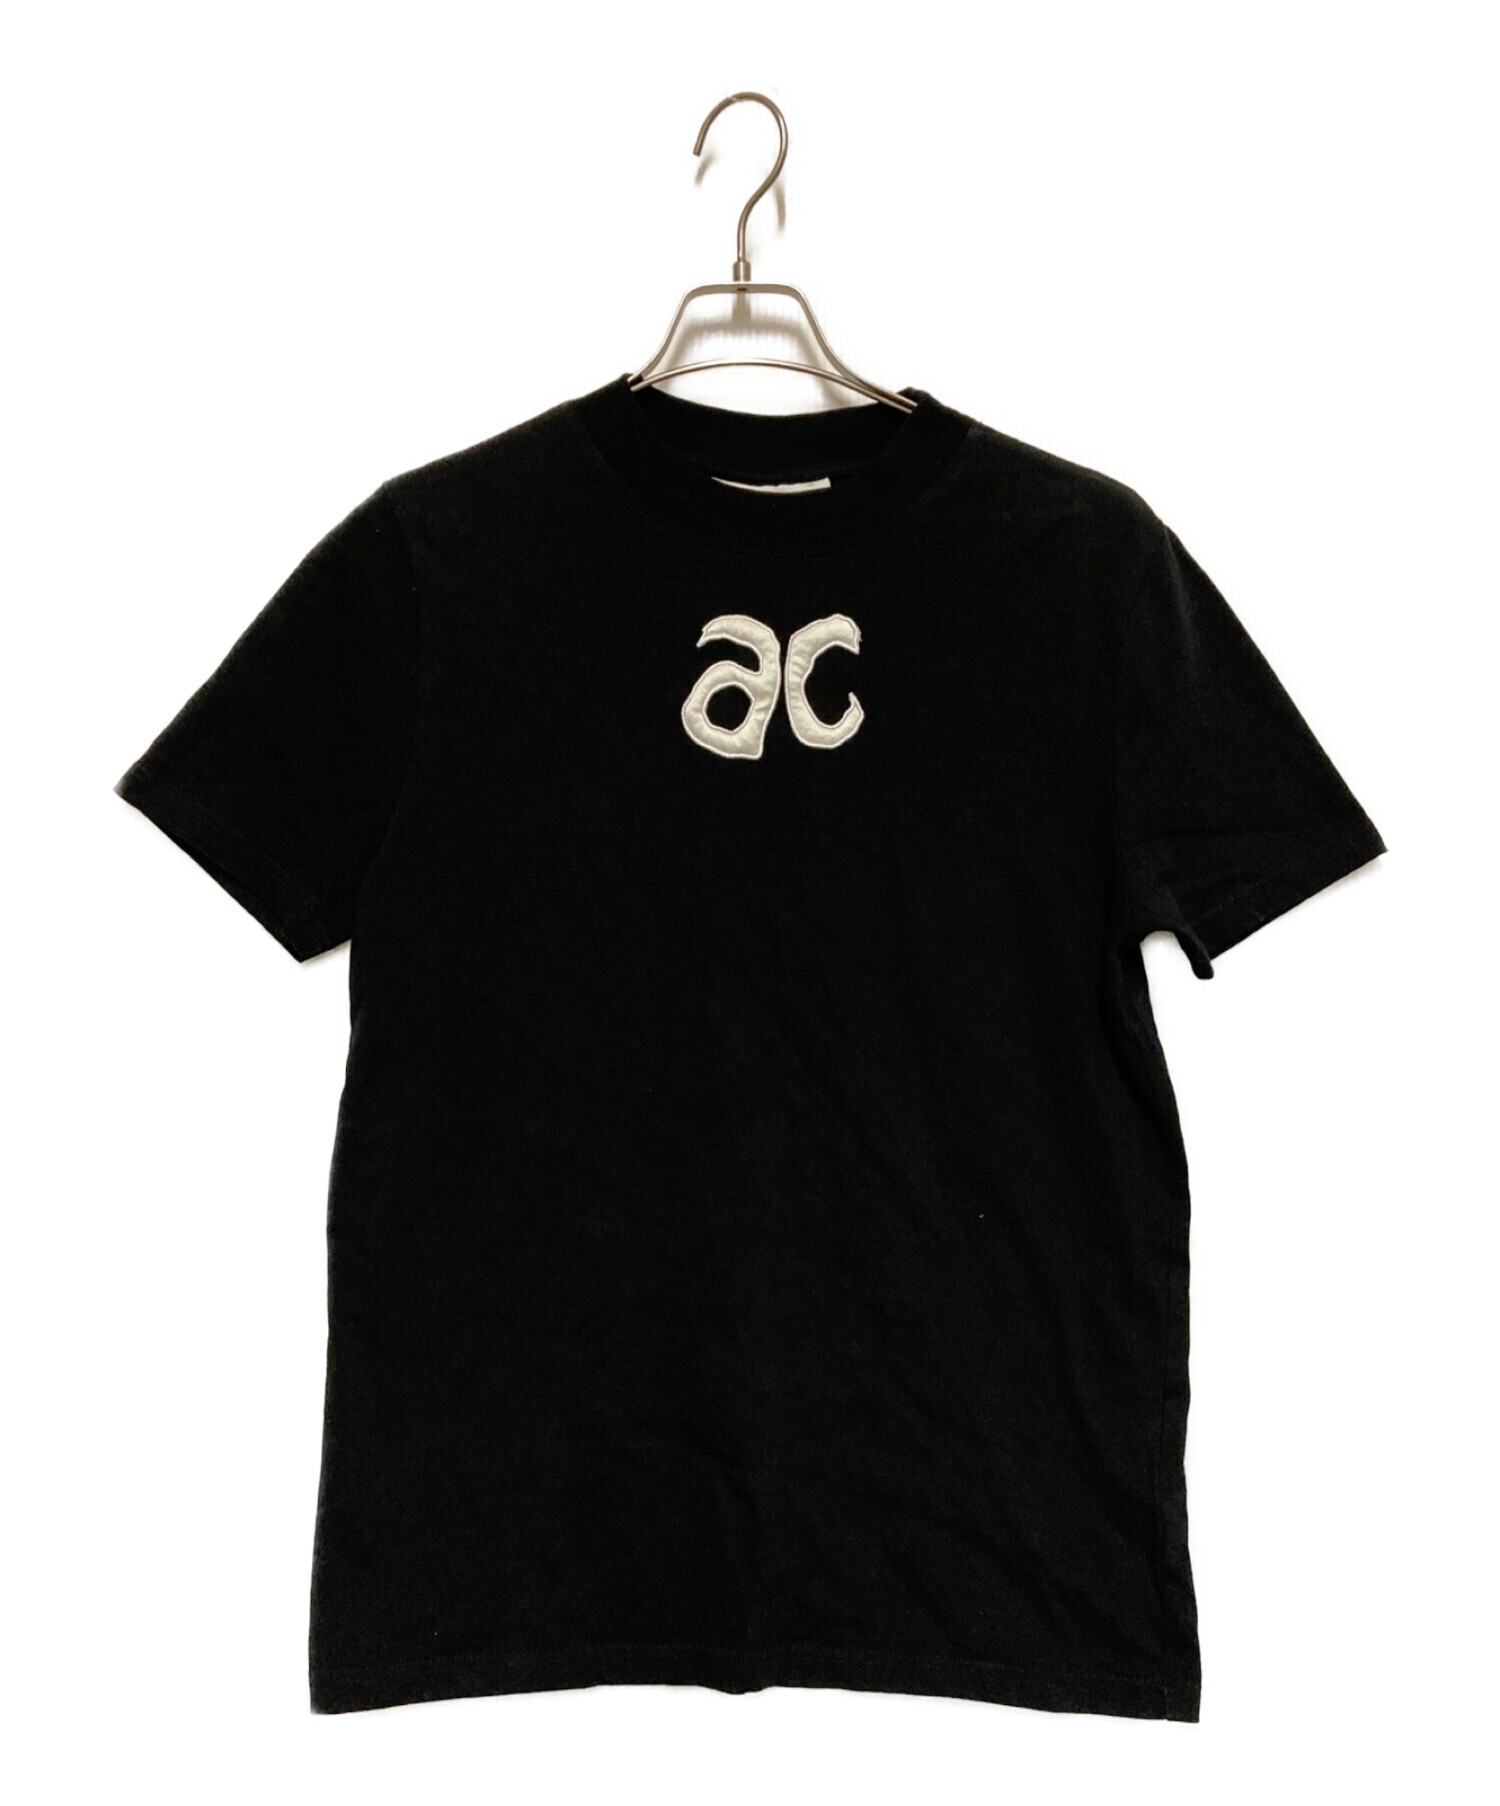 courreges (クレージュ) ロゴTシャツ ブラック サイズ:M